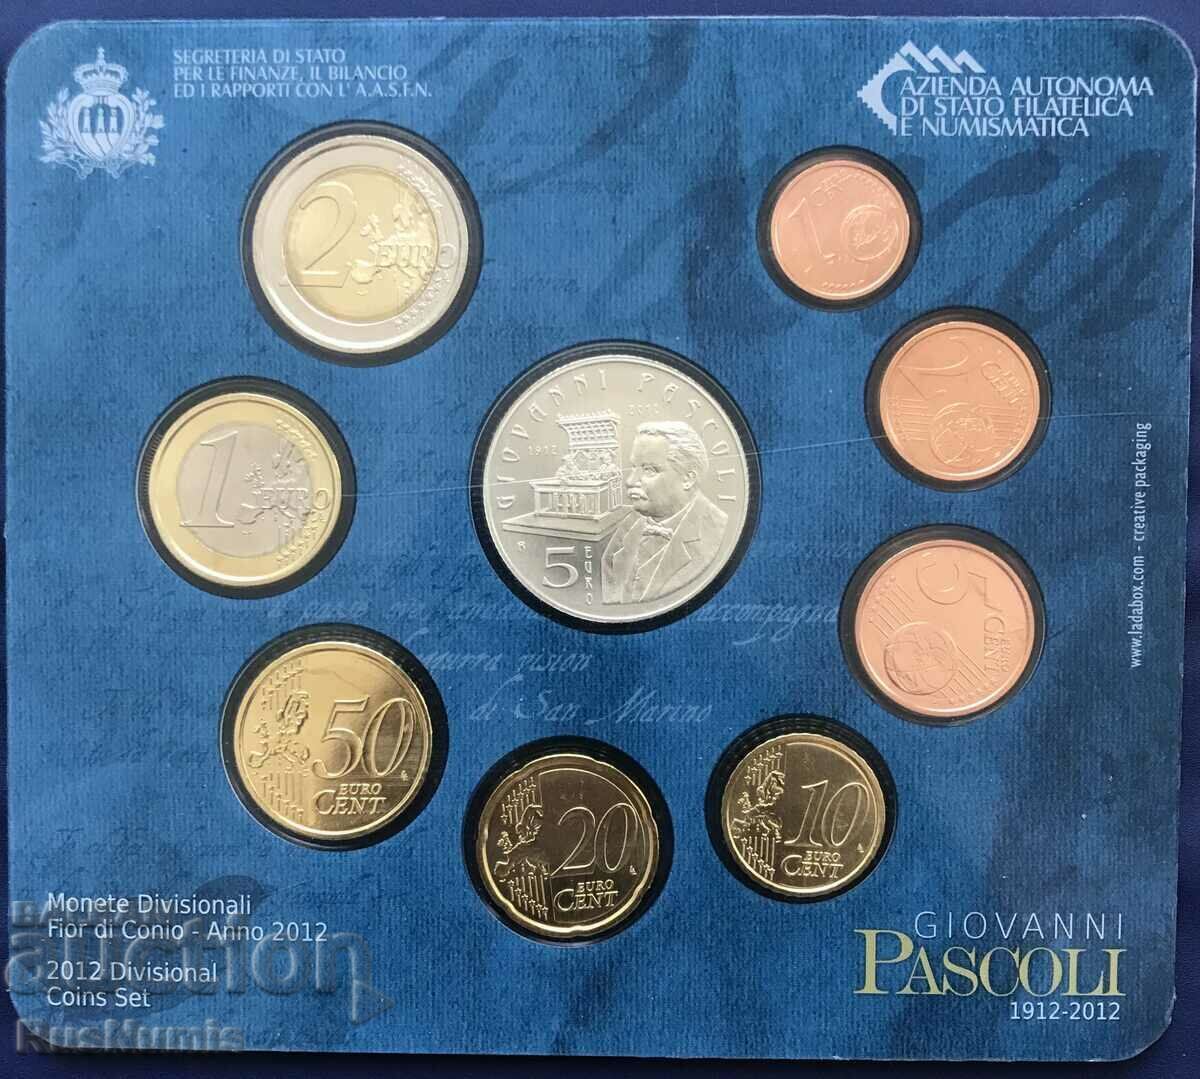 San Marino. Collection set of euro coins 2012